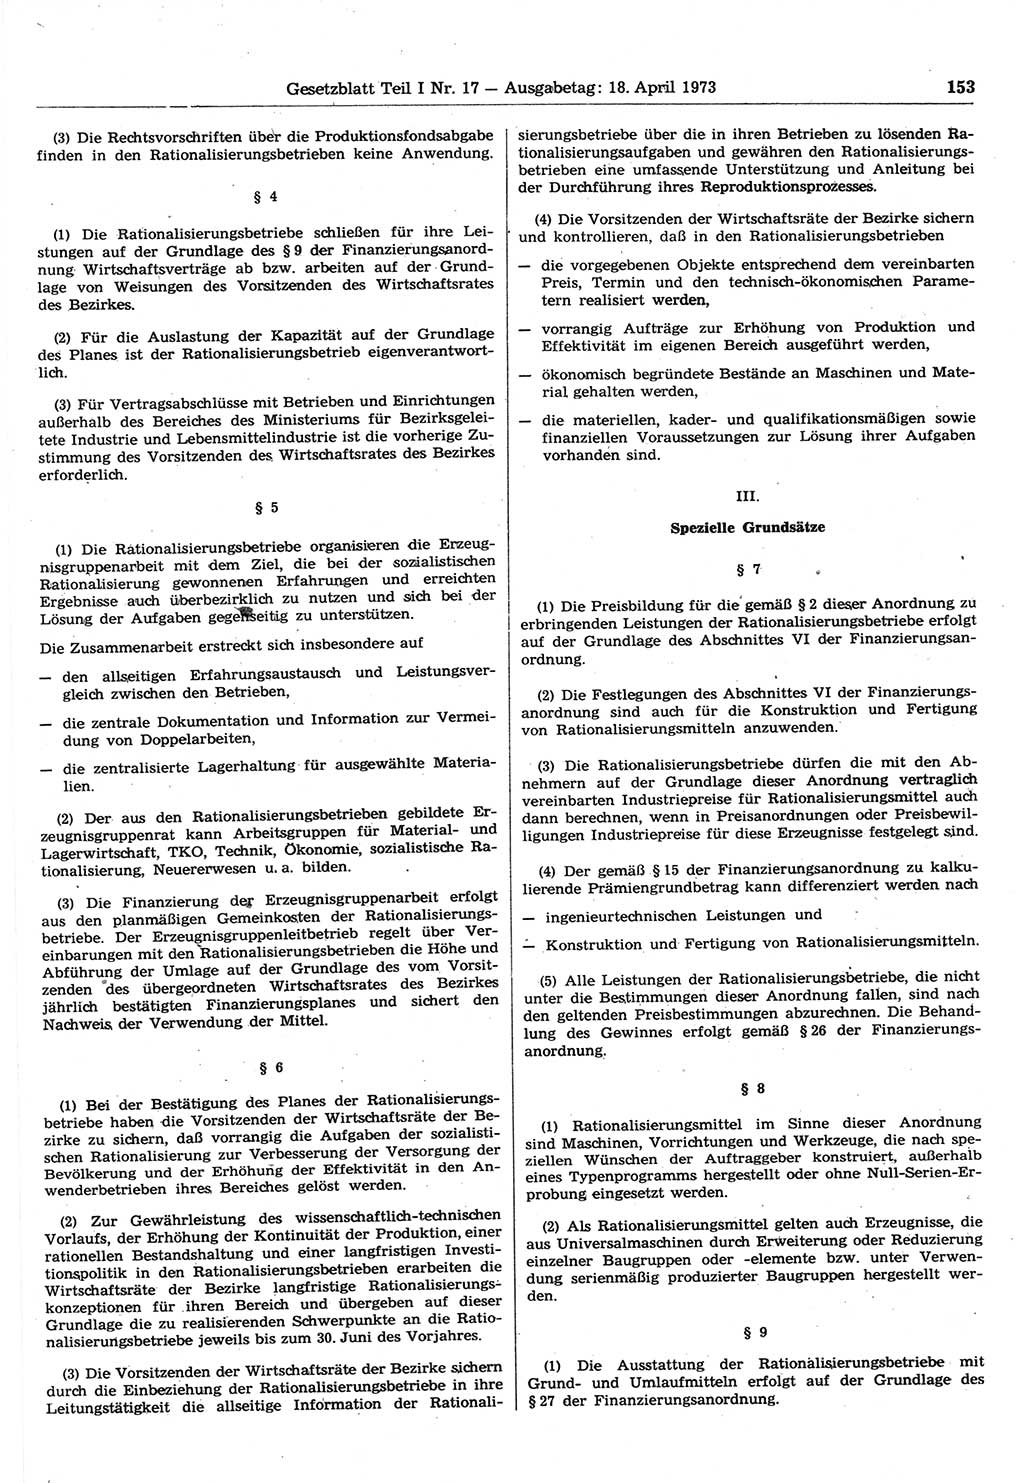 Gesetzblatt (GBl.) der Deutschen Demokratischen Republik (DDR) Teil Ⅰ 1973, Seite 153 (GBl. DDR Ⅰ 1973, S. 153)